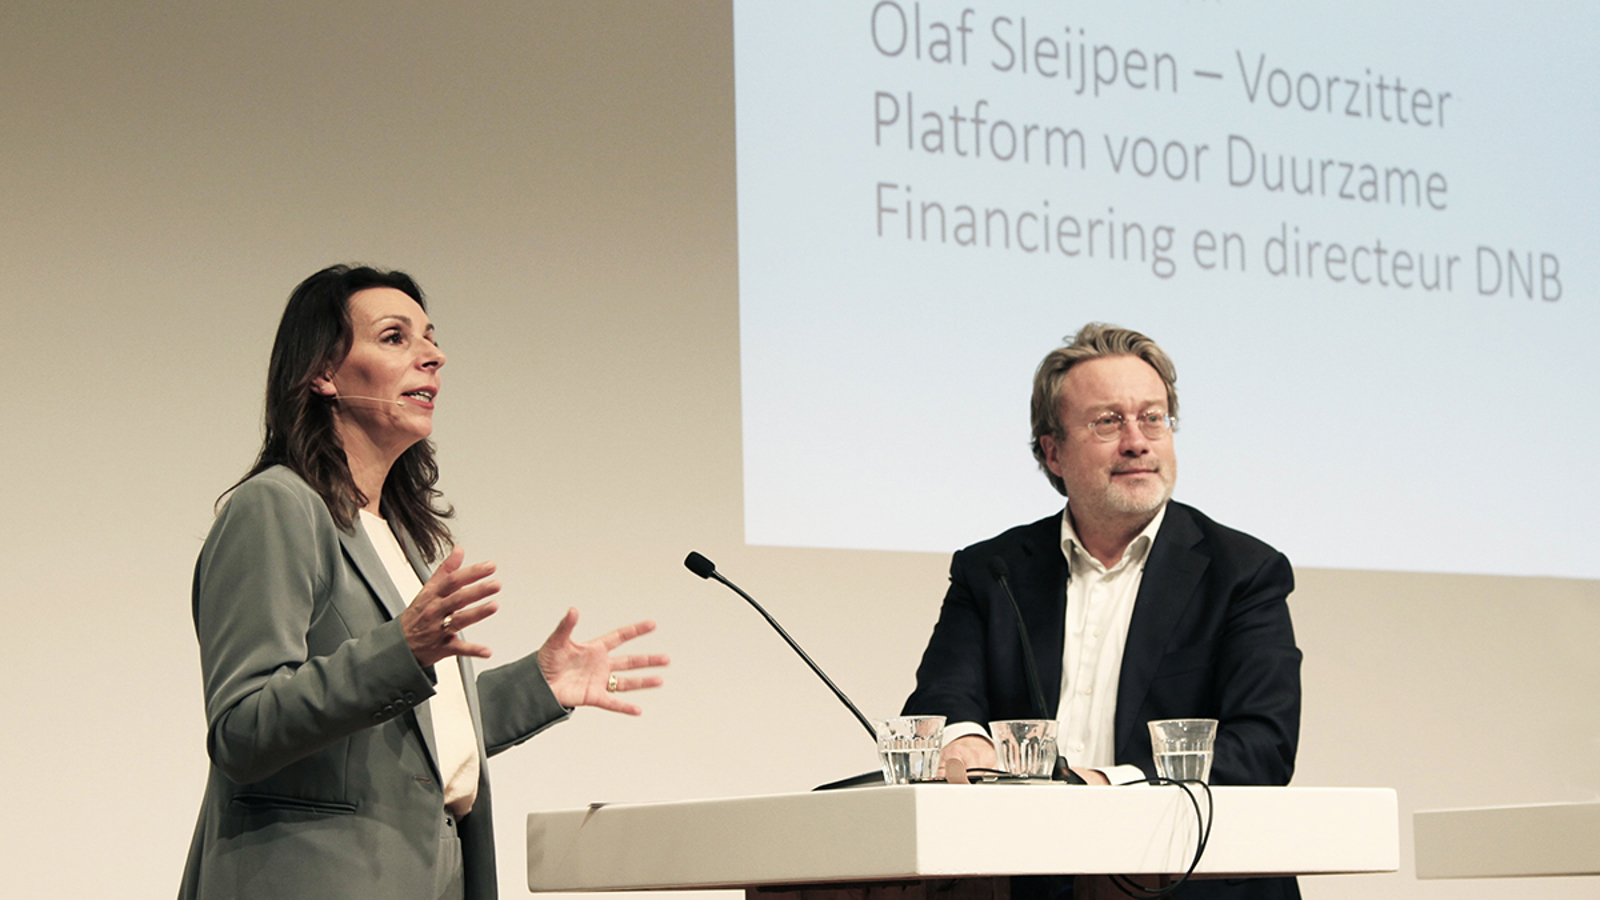 Platform voor Duurzame Financiering organiseert eerste werkconferentie